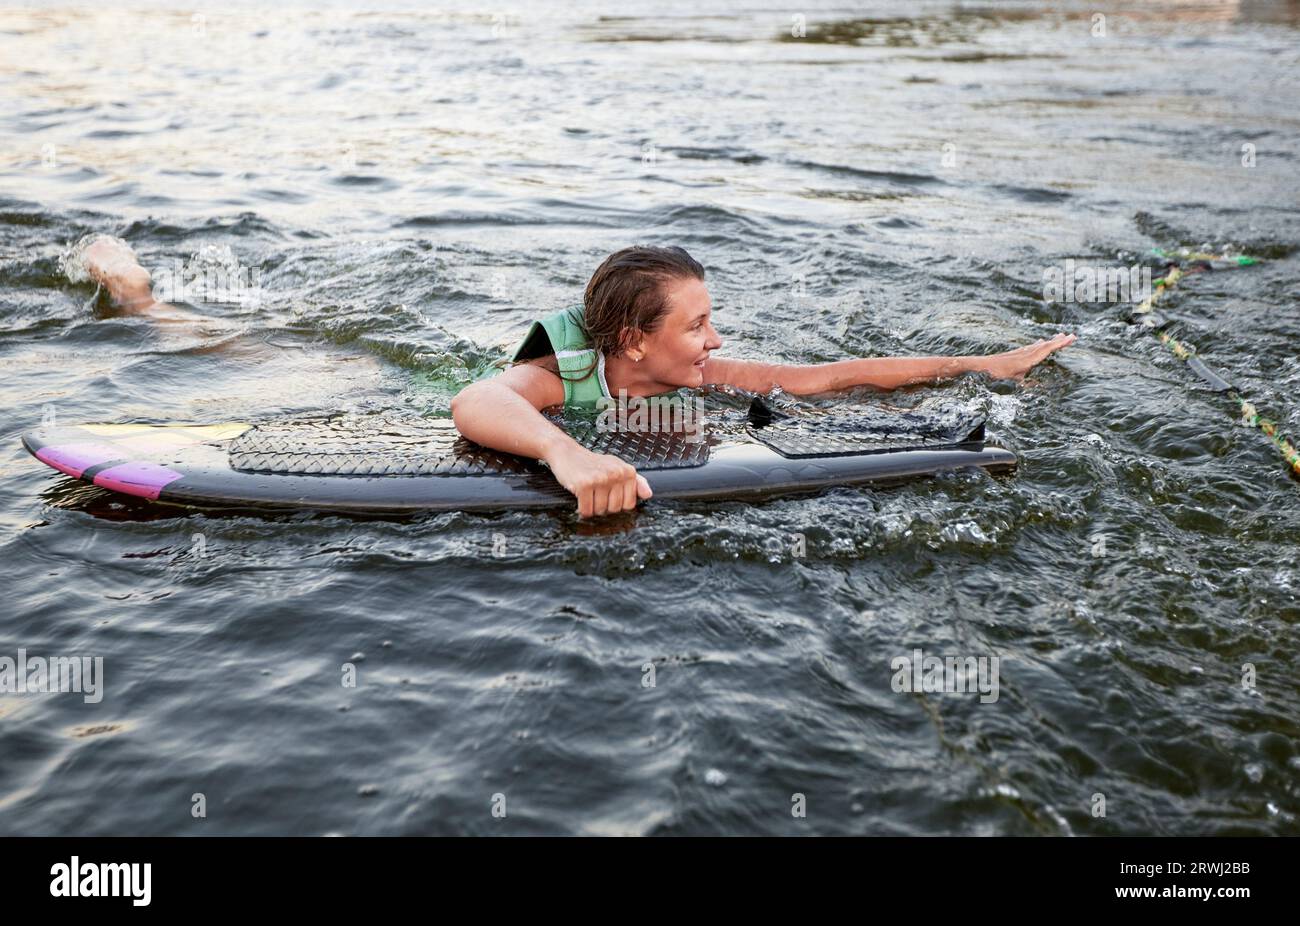 La giovane ragazza sportiva con un giubbotto di salvataggio verde nuota in acqua con un wakeboard in mano. Una sportiva felice si sta preparando per un ripido wakeboa Foto Stock